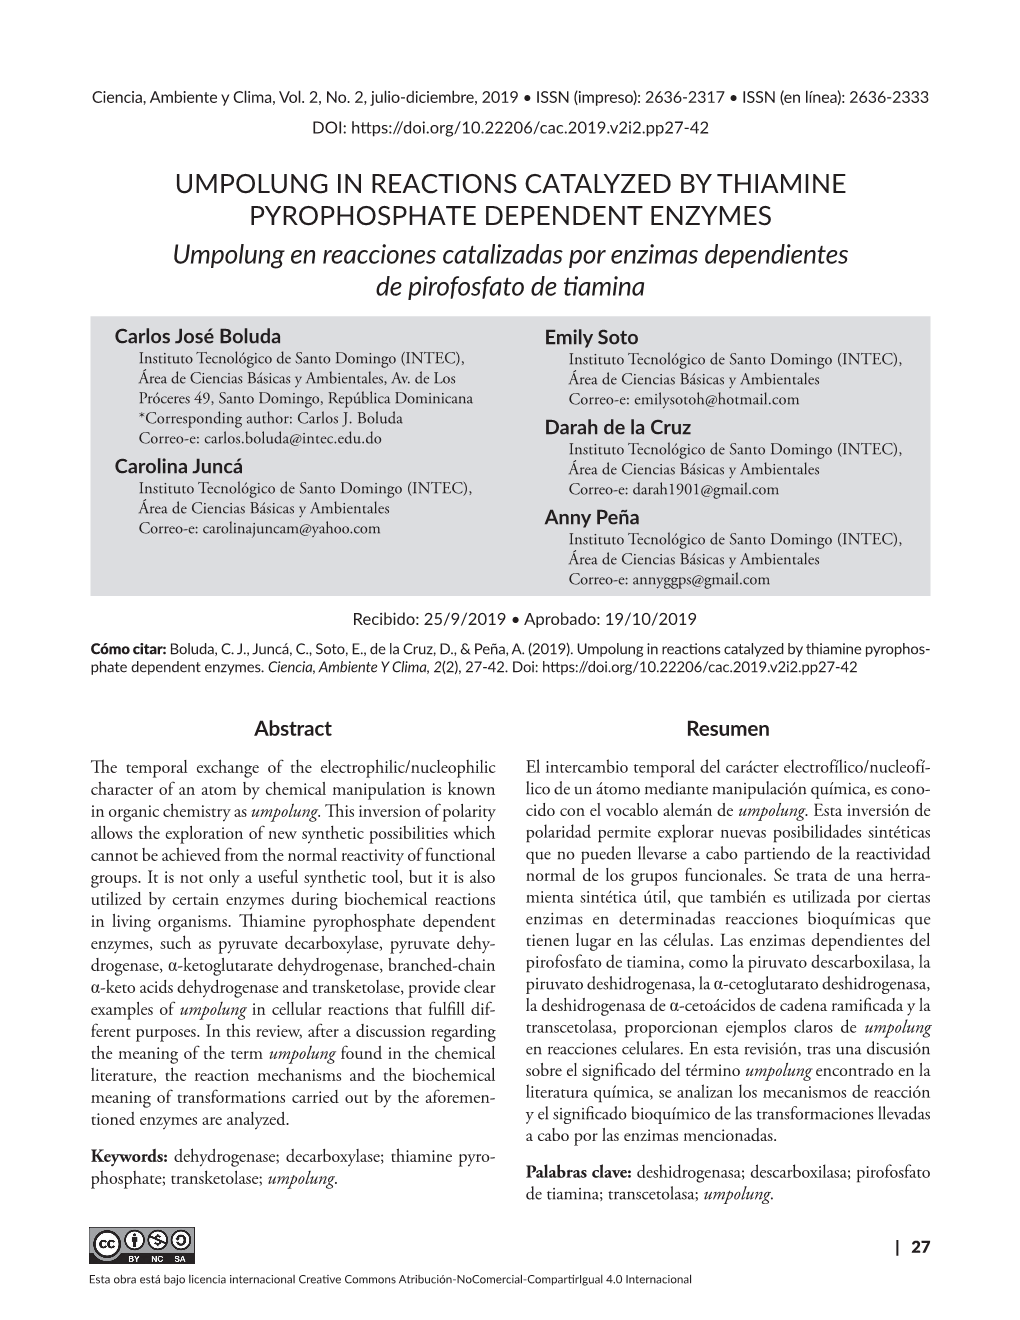 UMPOLUNG in REACTIONS CATALYZED by THIAMINE PYROPHOSPHATE DEPENDENT ENZYMES Umpolung En Reacciones Catalizadas Por Enzimas Dependientes De Pirofosfato De Tiamina